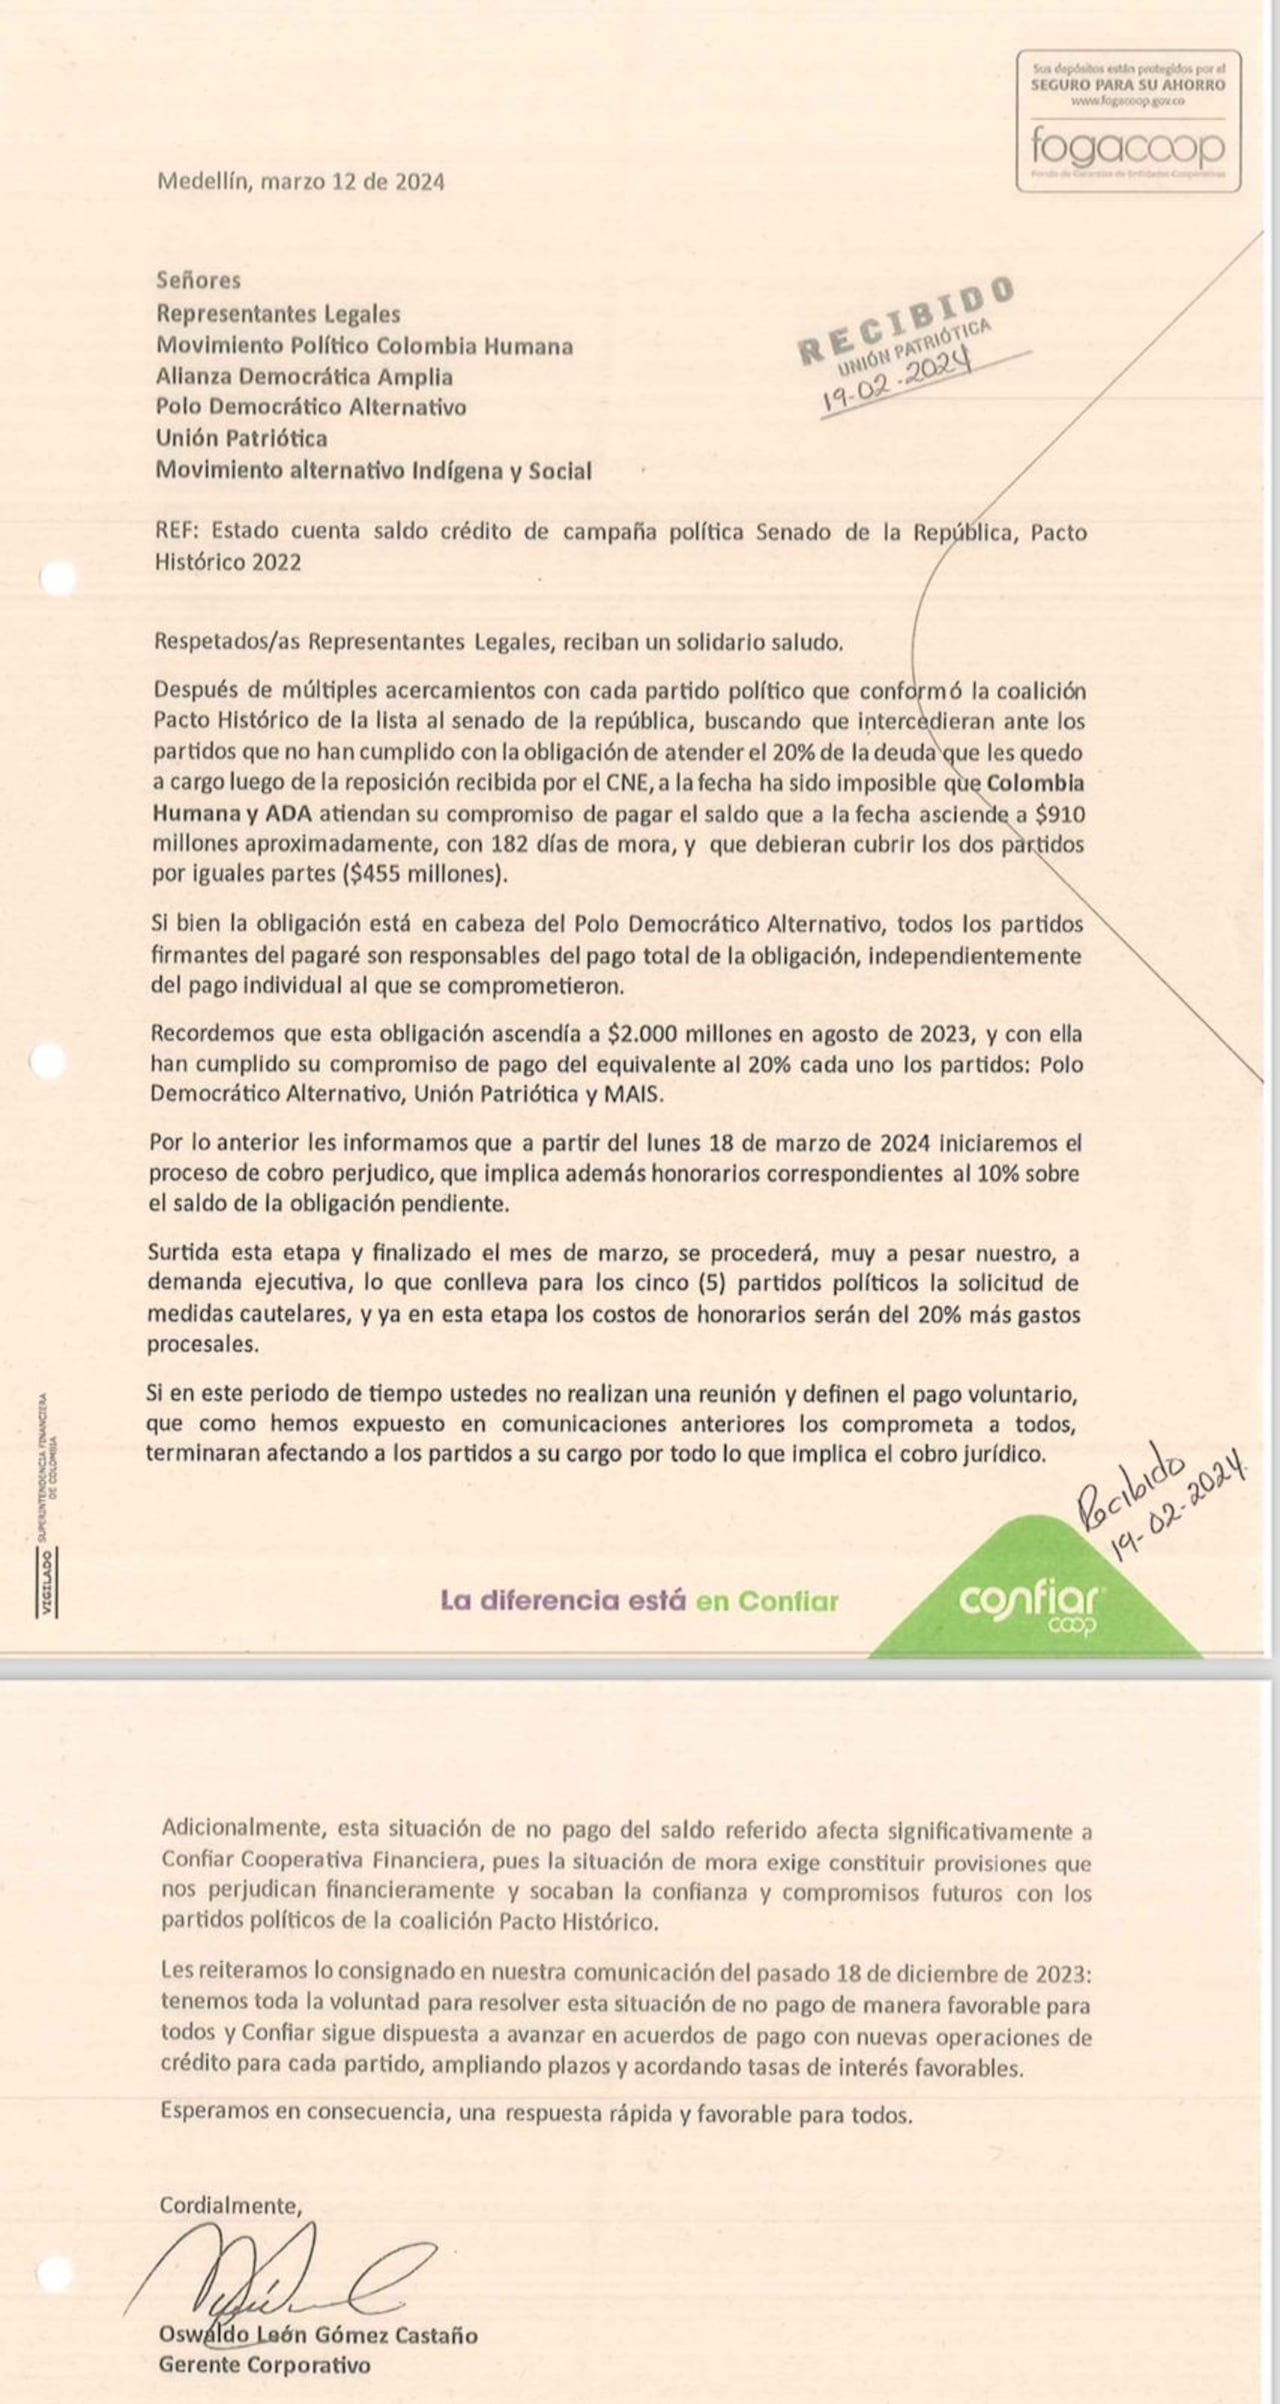 Esta es la carta de la Cooperativa que advierte procesos jurídicos contra algunos partidos políticos del Pacto Histórico.